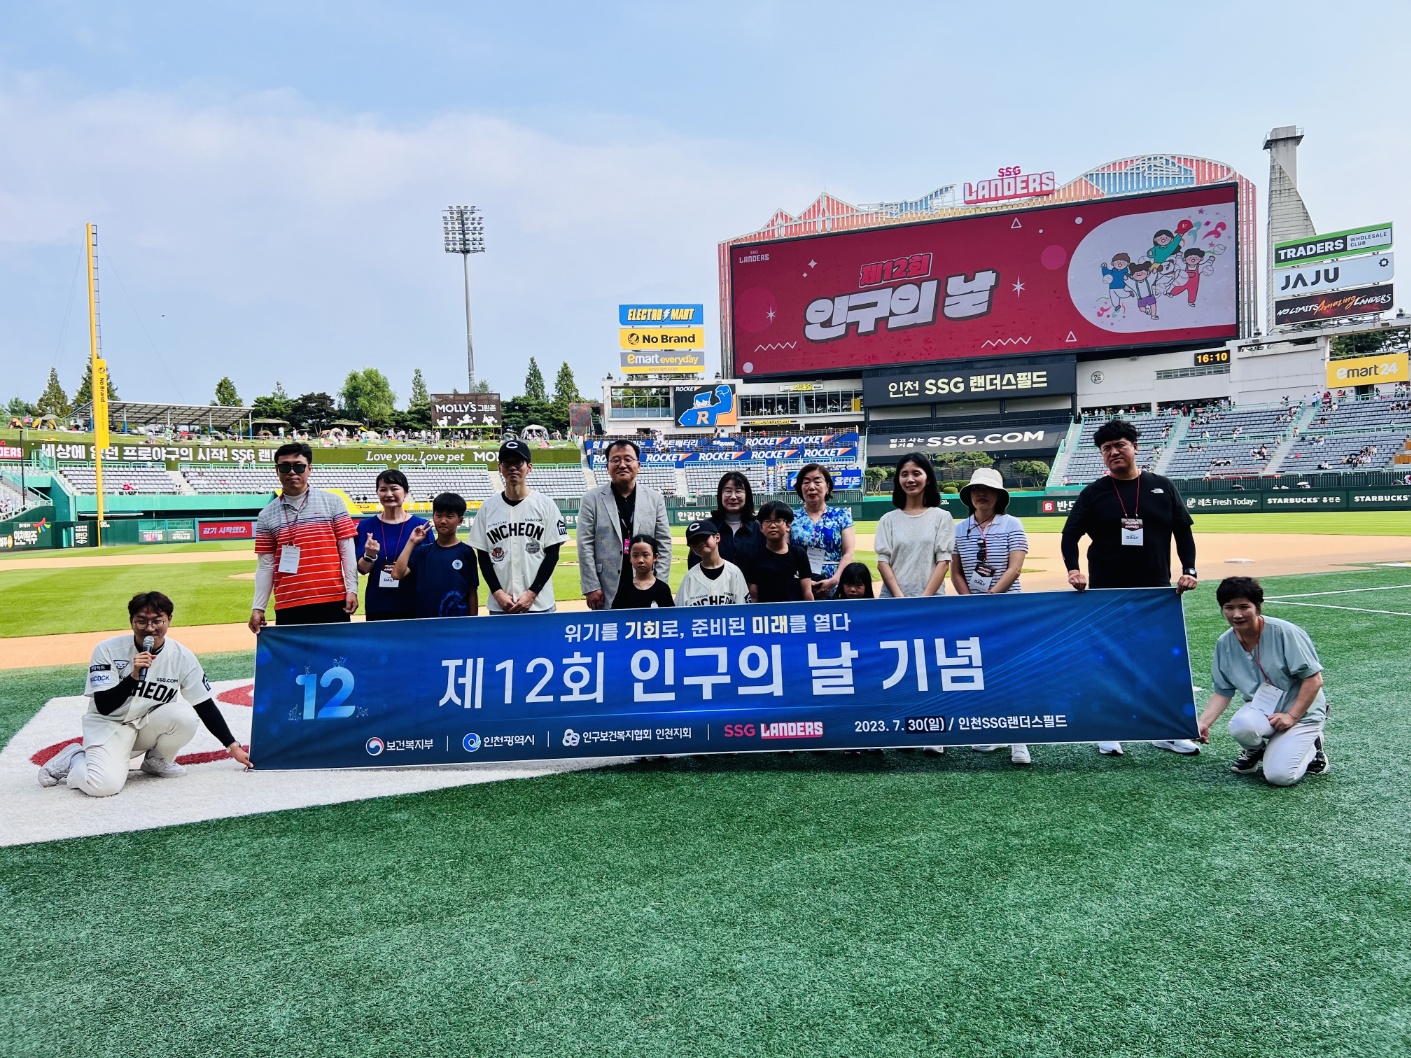 2023년 7월 11일에 인천에서 열린 제 12회 인구의 날 기념식 사진이다. 